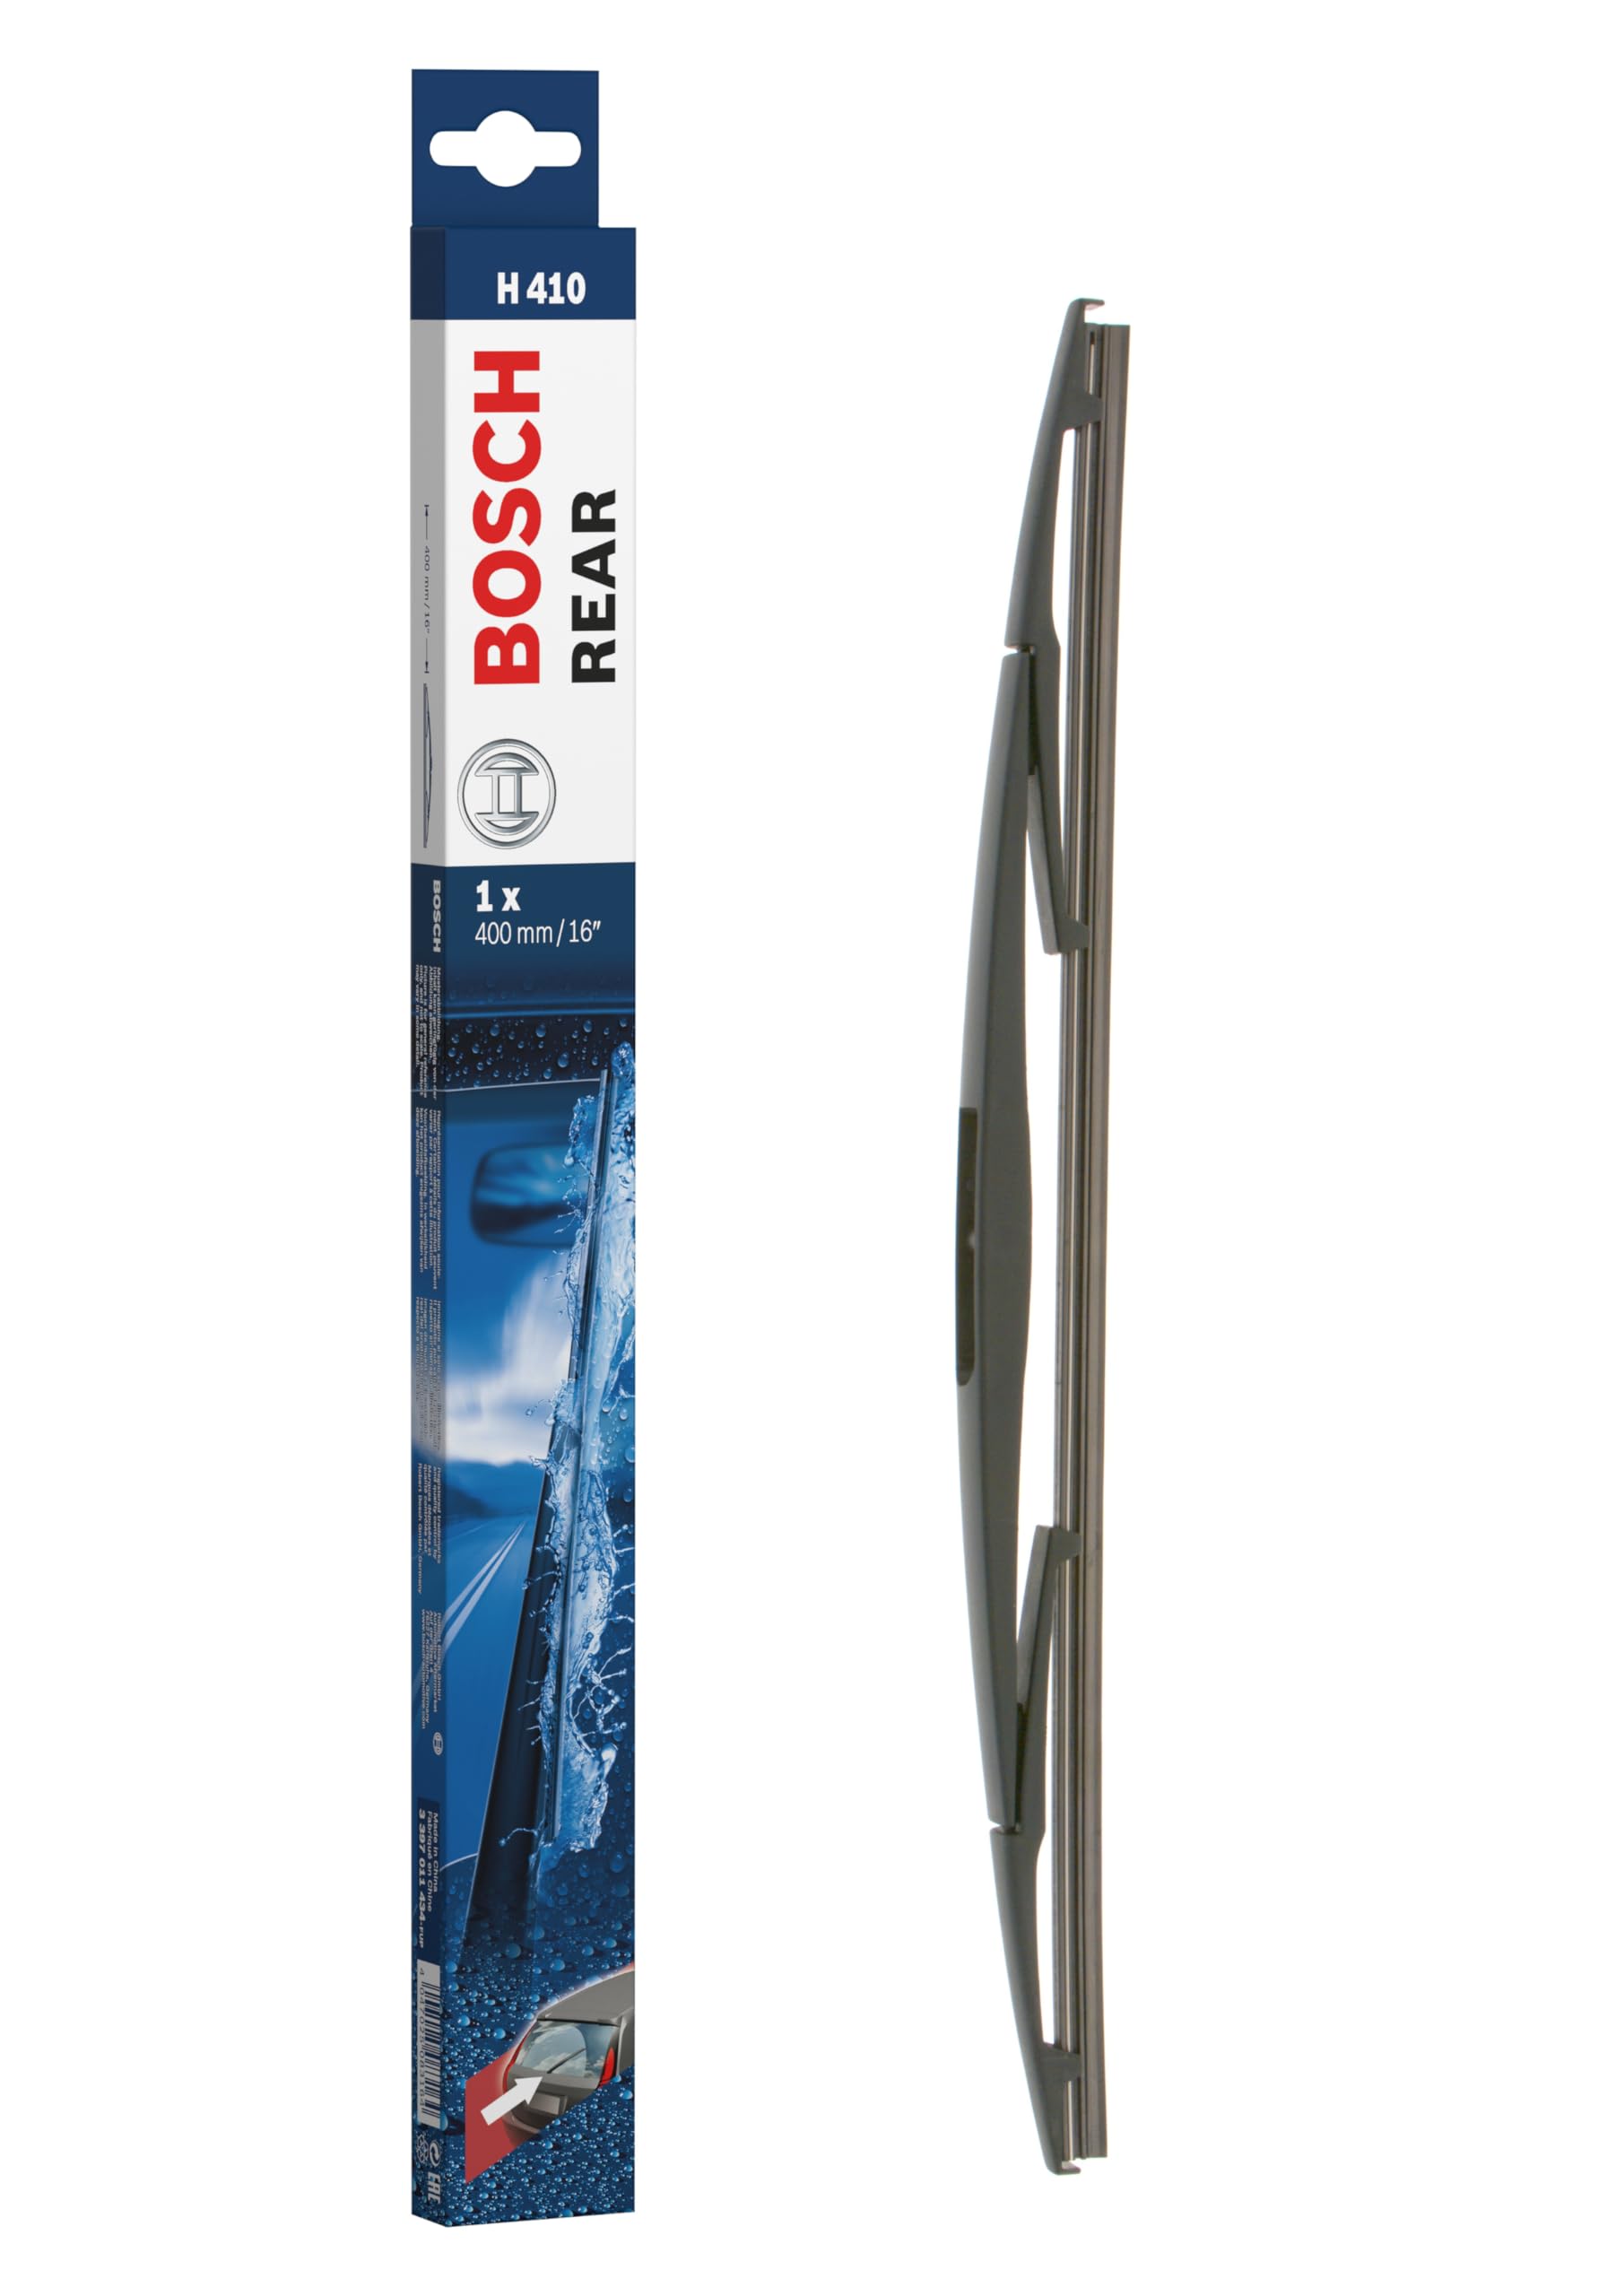 Bosch Scheibenwischer Rear H410, Länge: 400mm – Scheibenwischer für Heckscheibe von Bosch Automotive